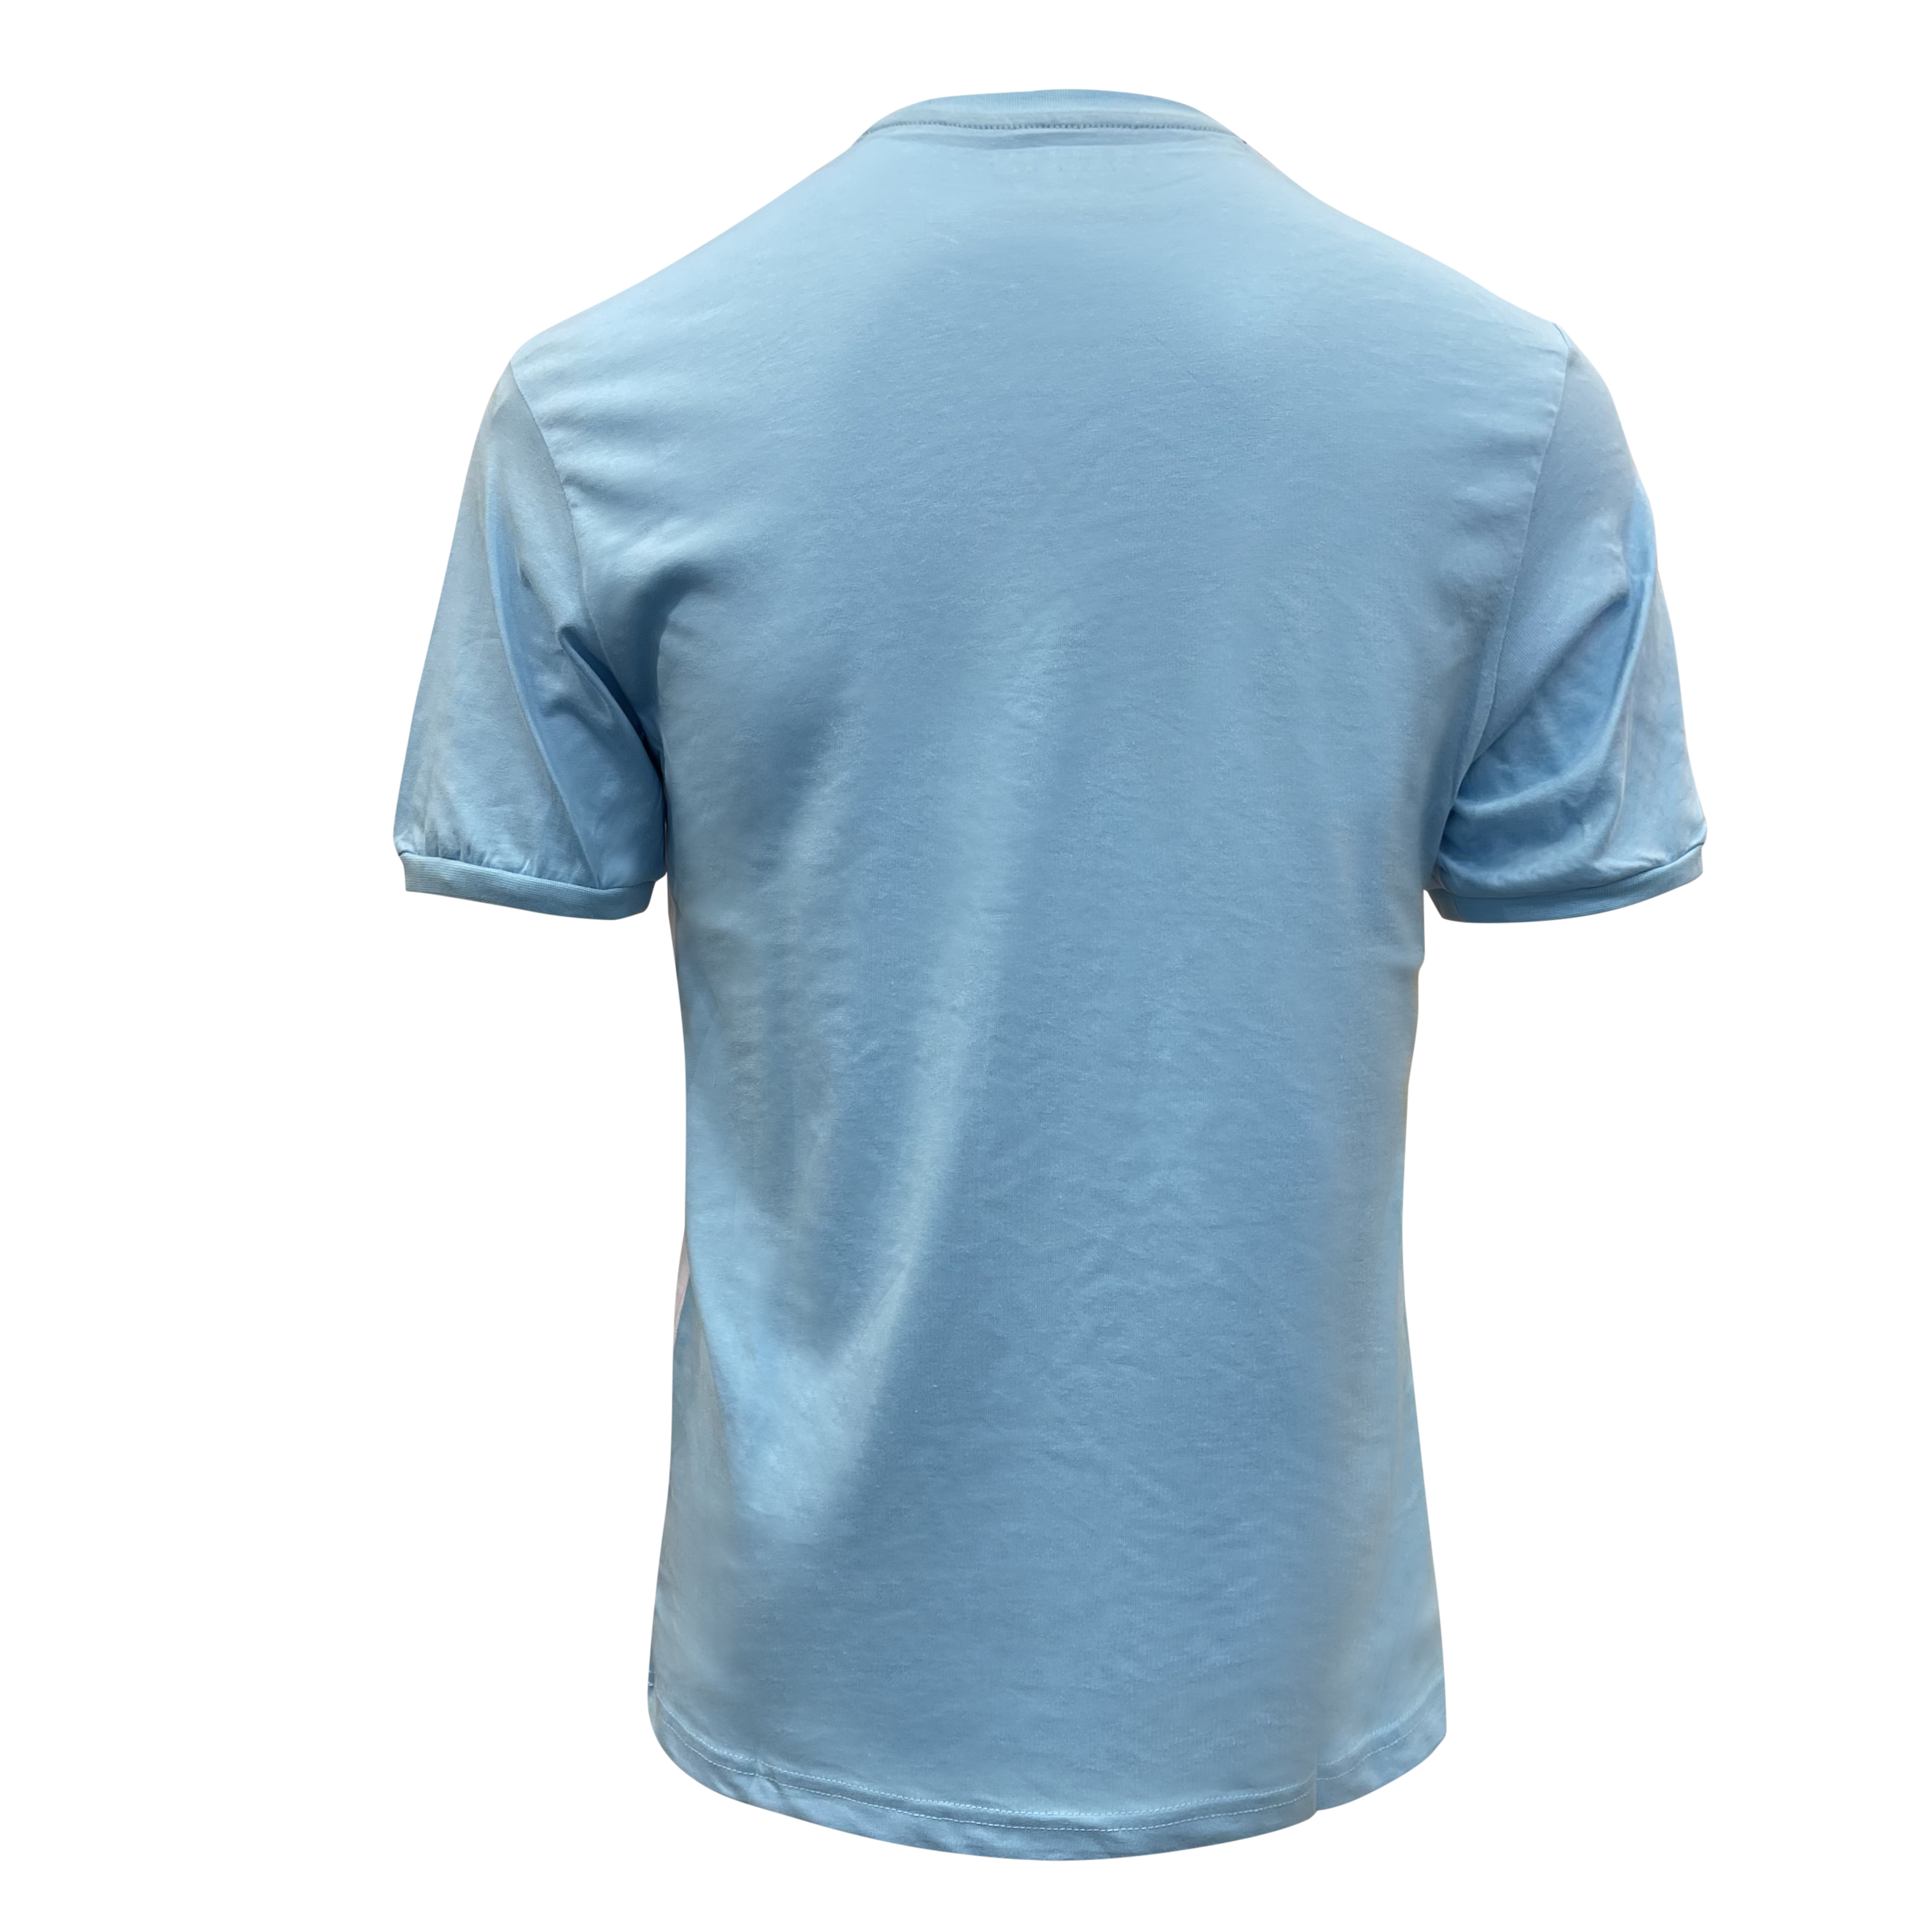 T-shirt heren Ballin -blauw/wit - Streetfashion 86